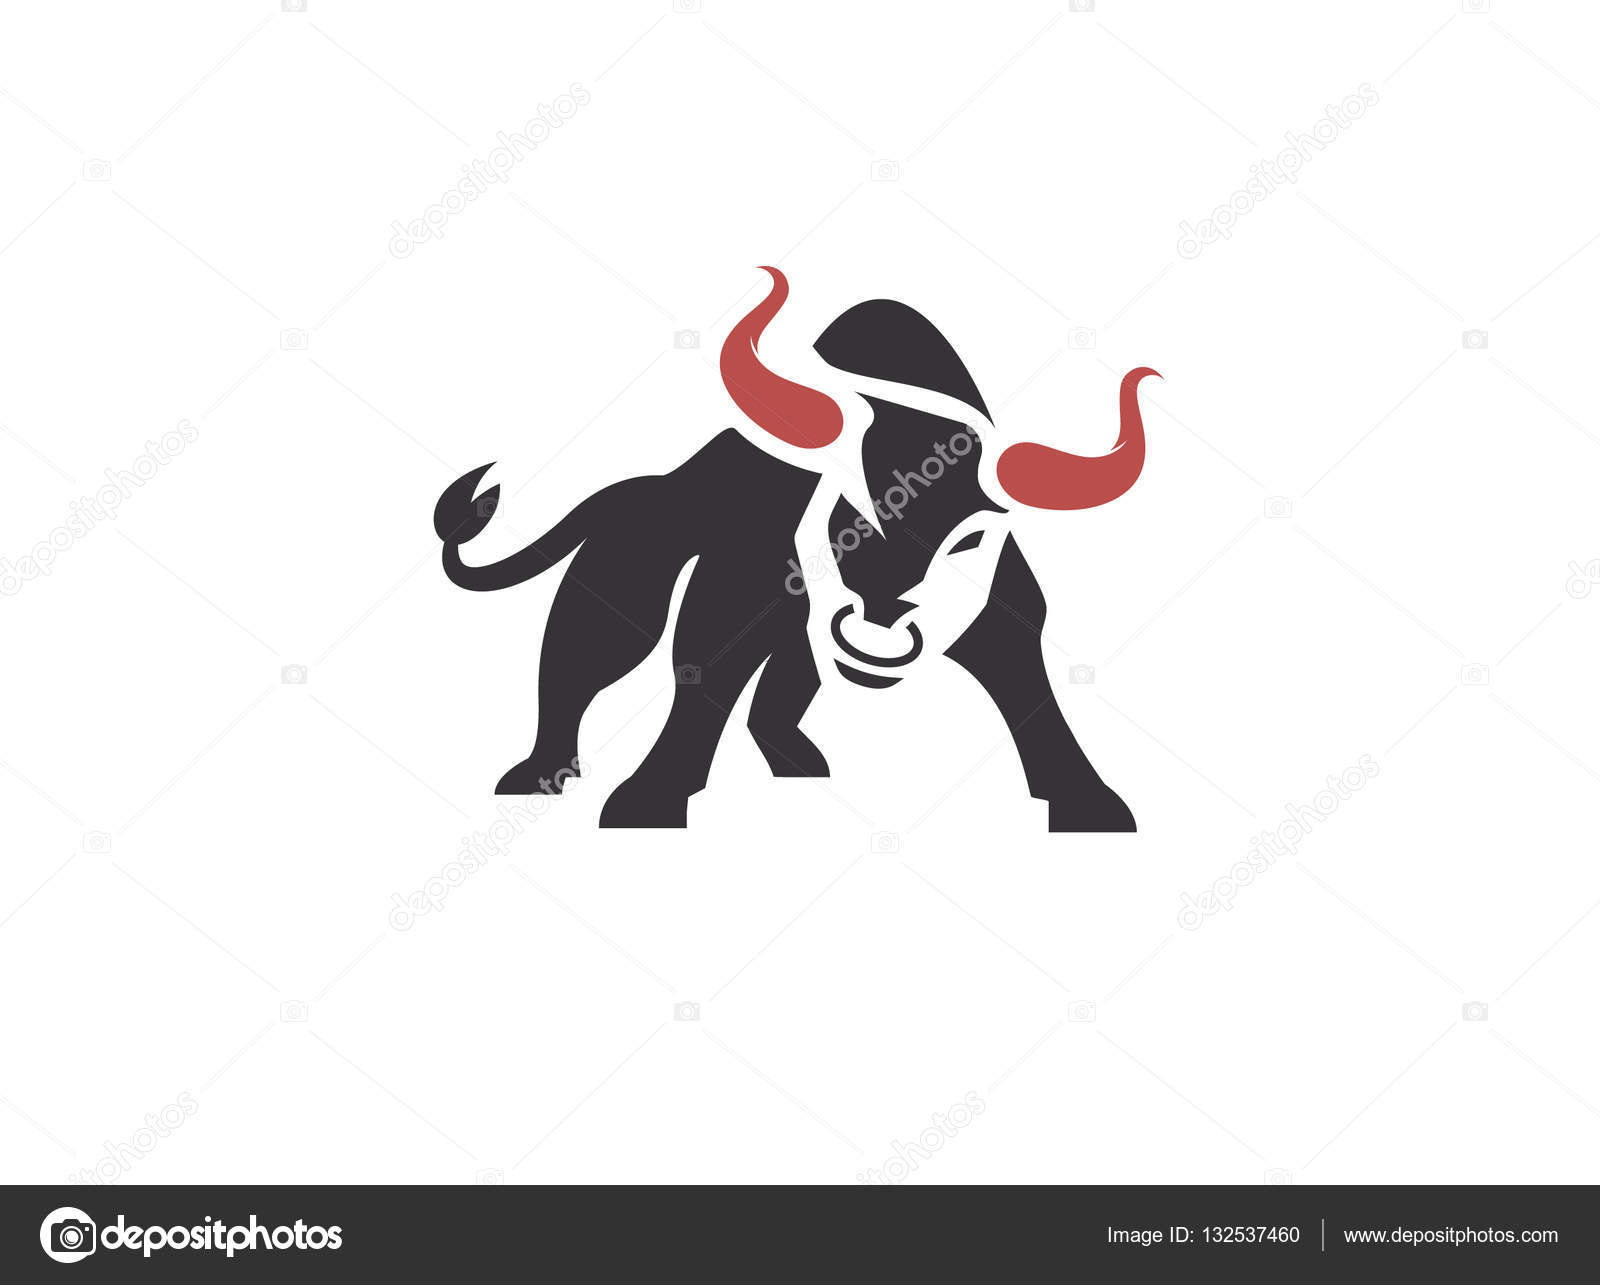 Italiana bull image